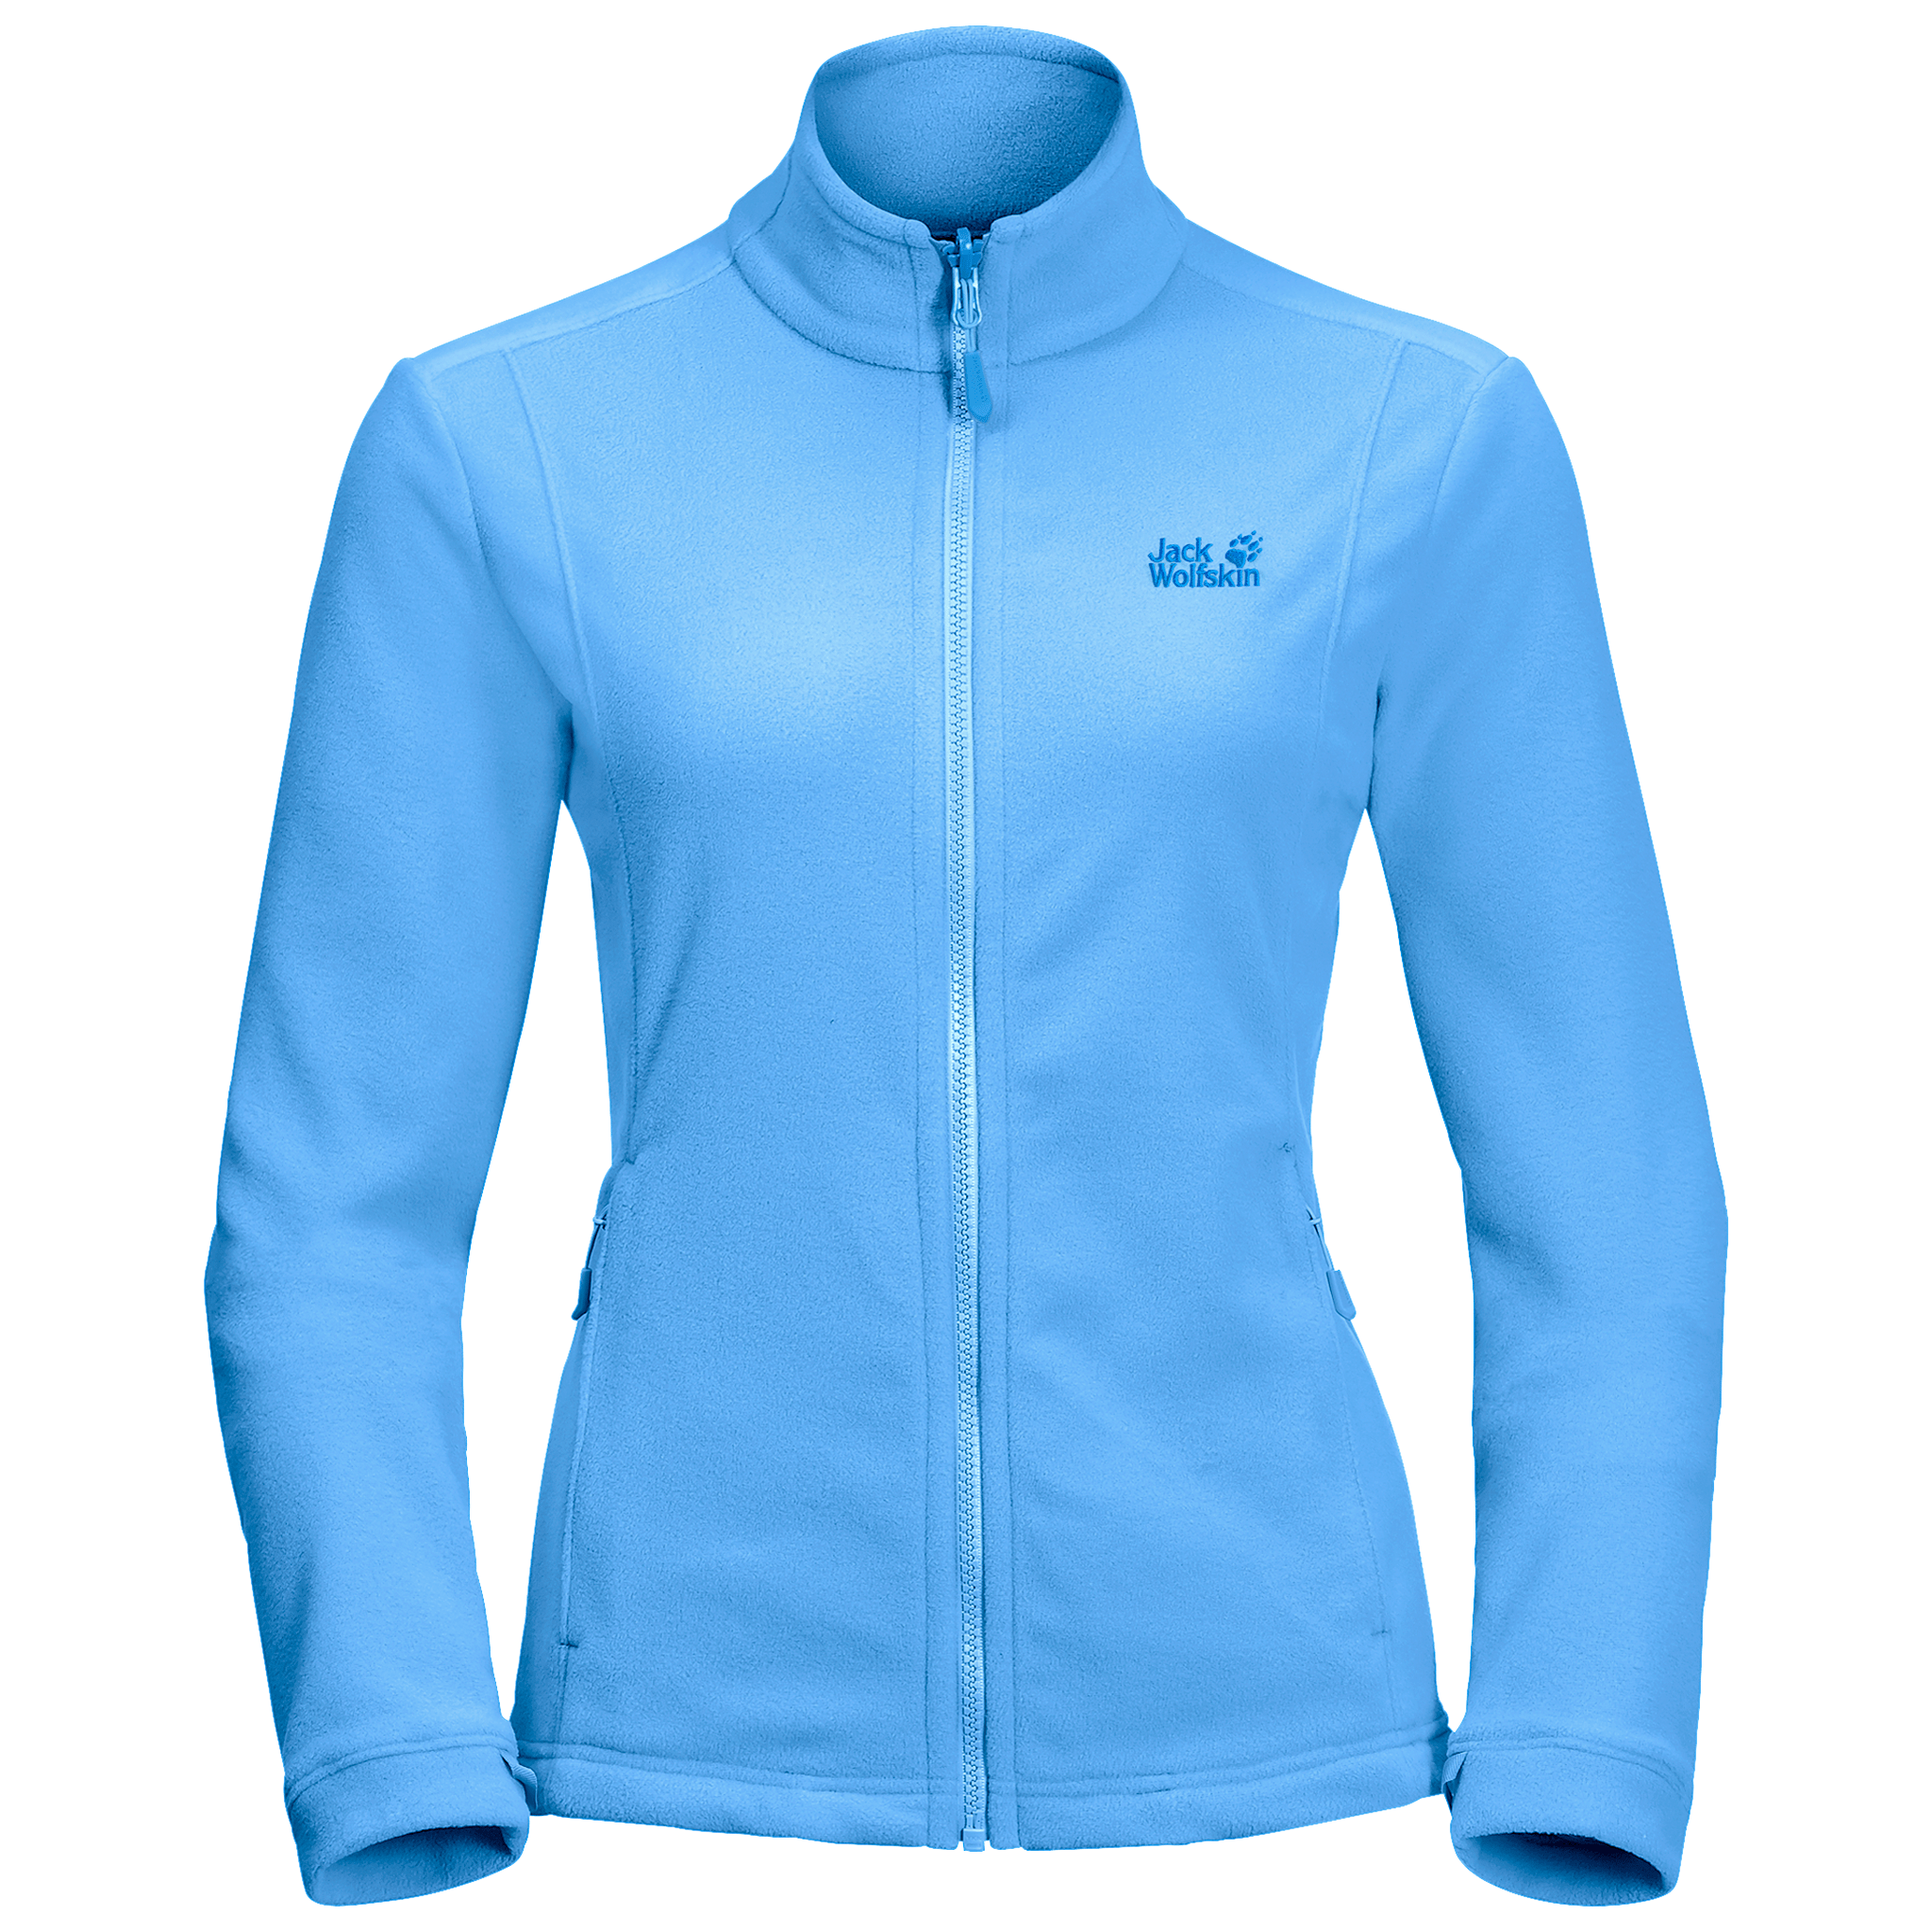 Misty Blue Lightweight Fleece Jacket